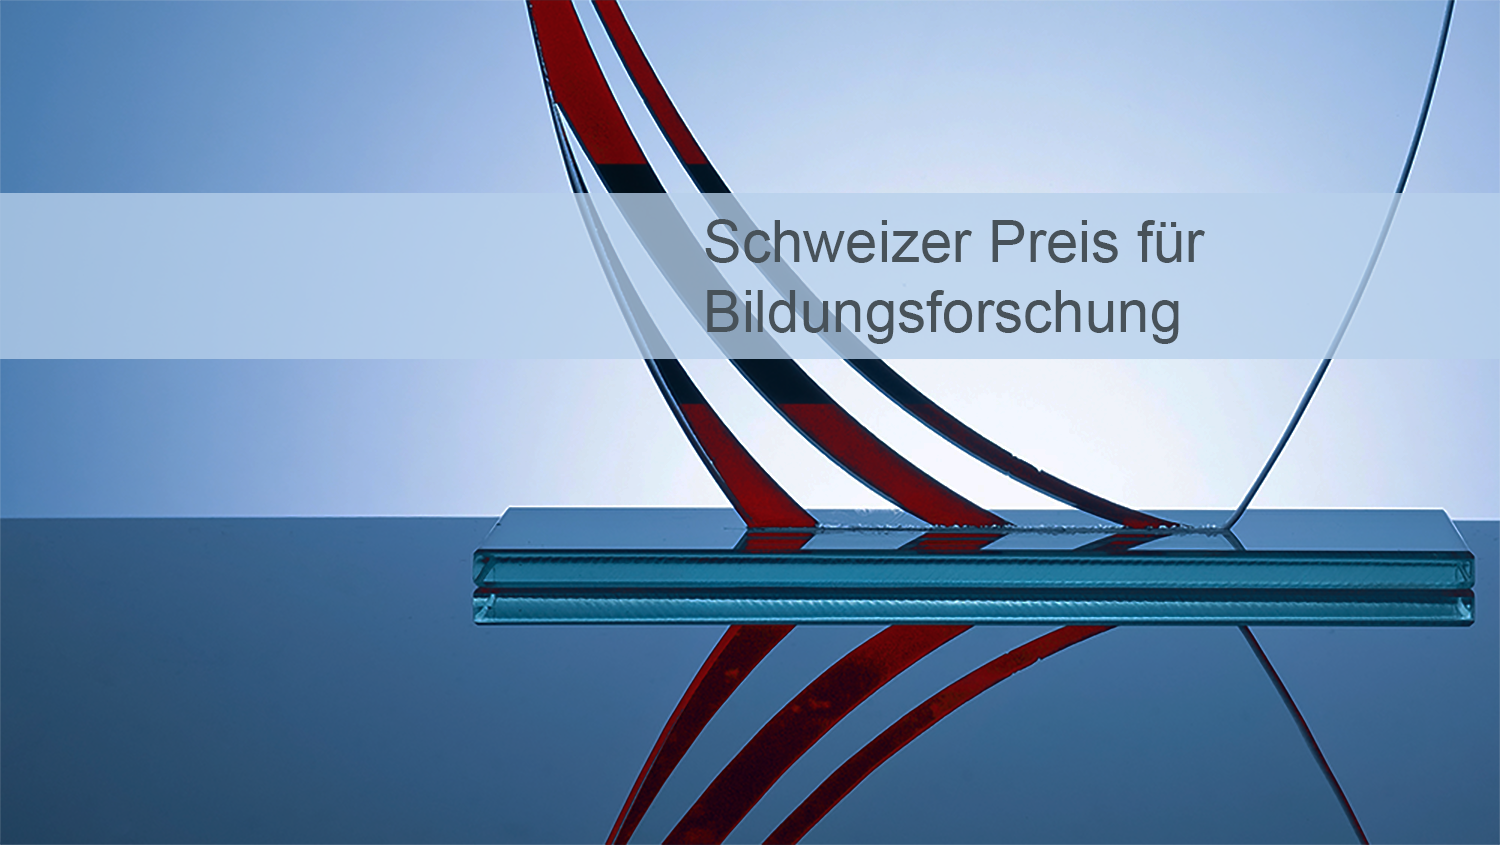 Symbolbild eines Pokals neben dem Schriftzug "Schweizer Preis für Bildungsforschung"